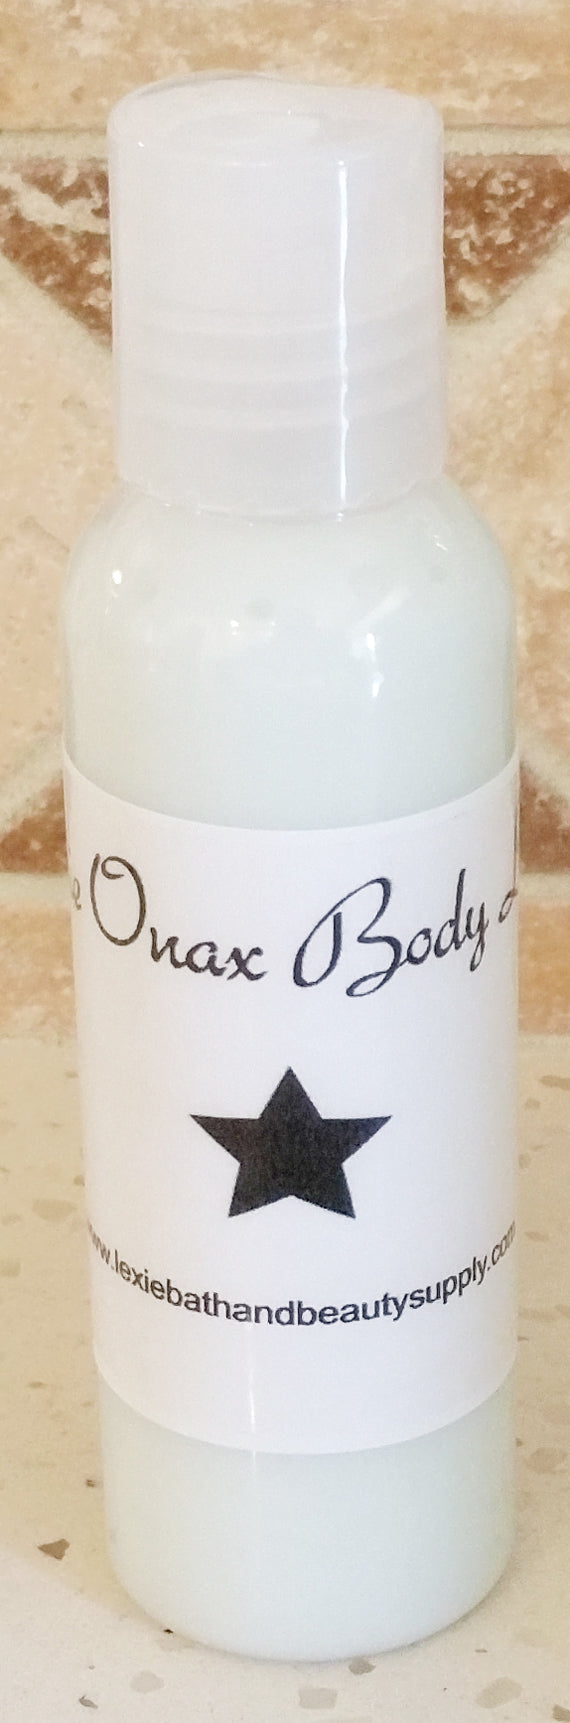 Lexie Onax Body Lotion - Lexie Bath and Beauty Supply